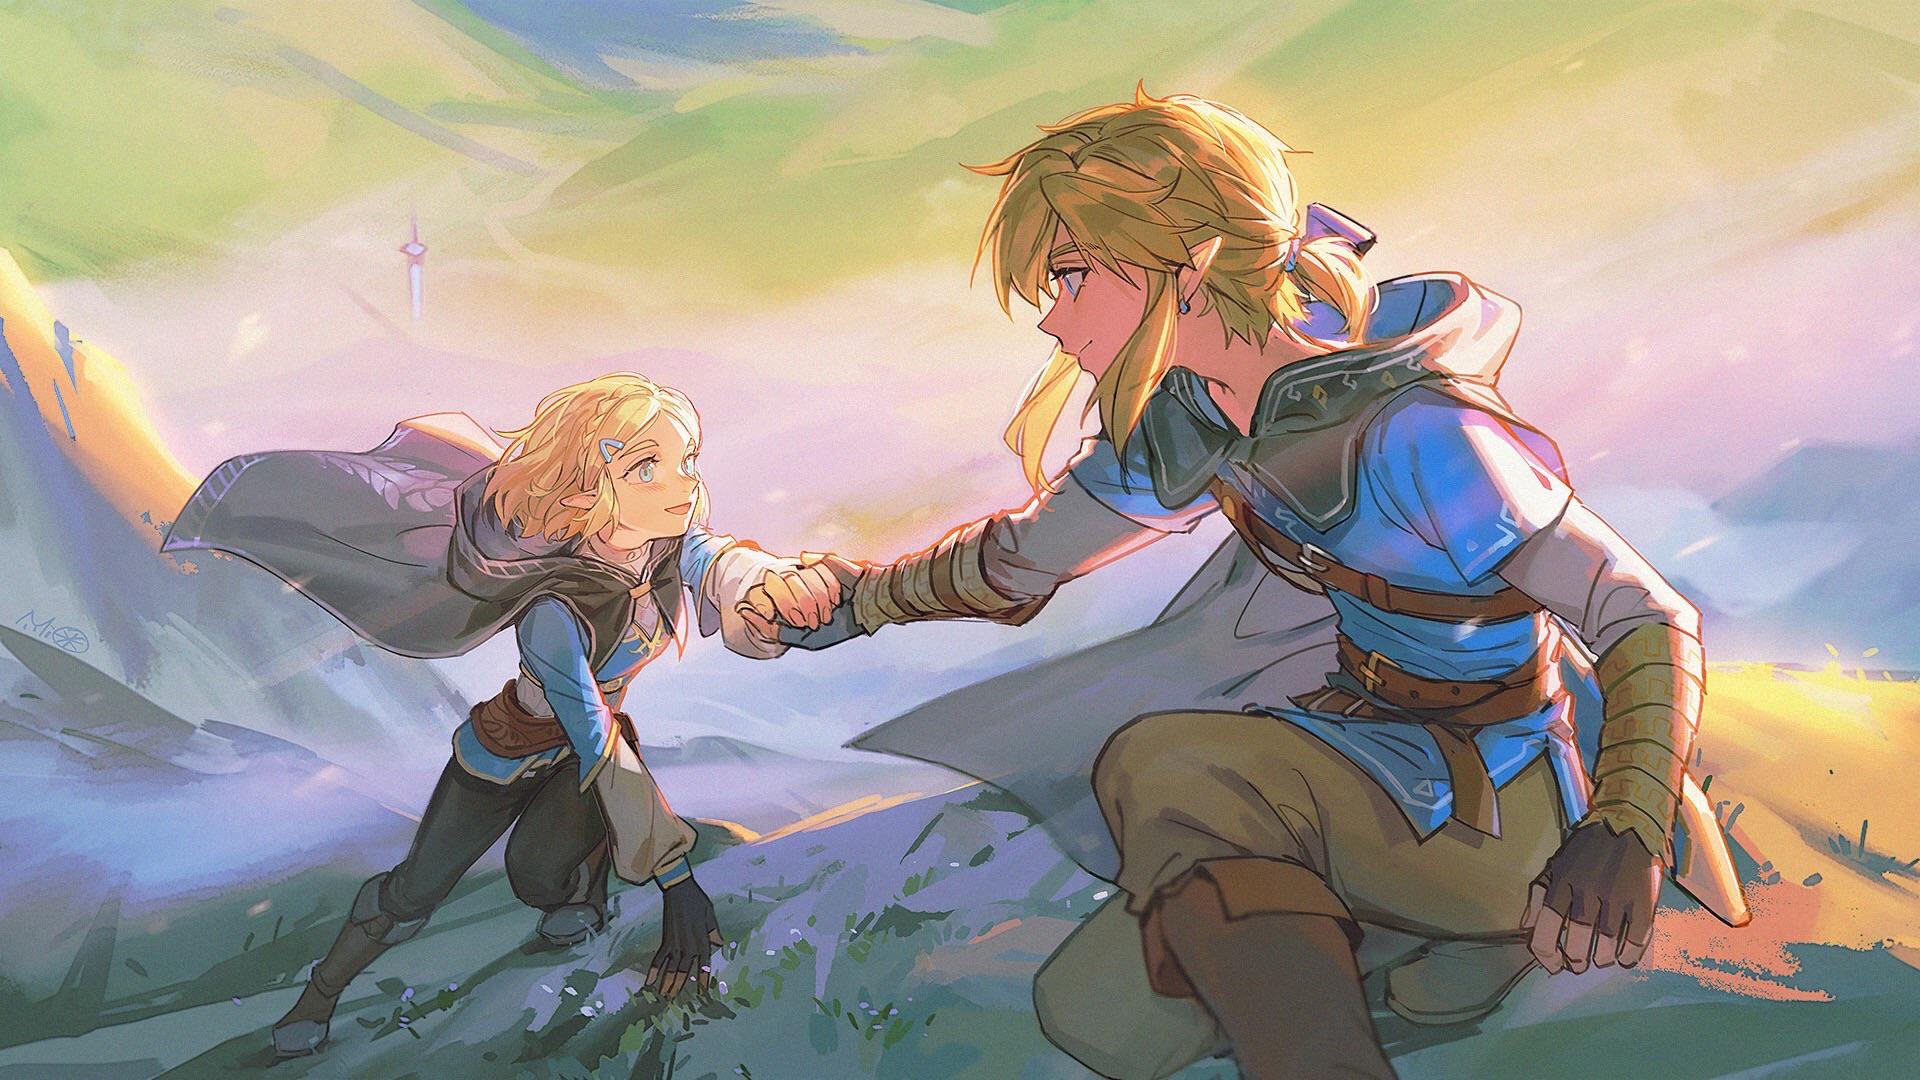 Zelda and Link Climbing, ZeLinkreddit.com